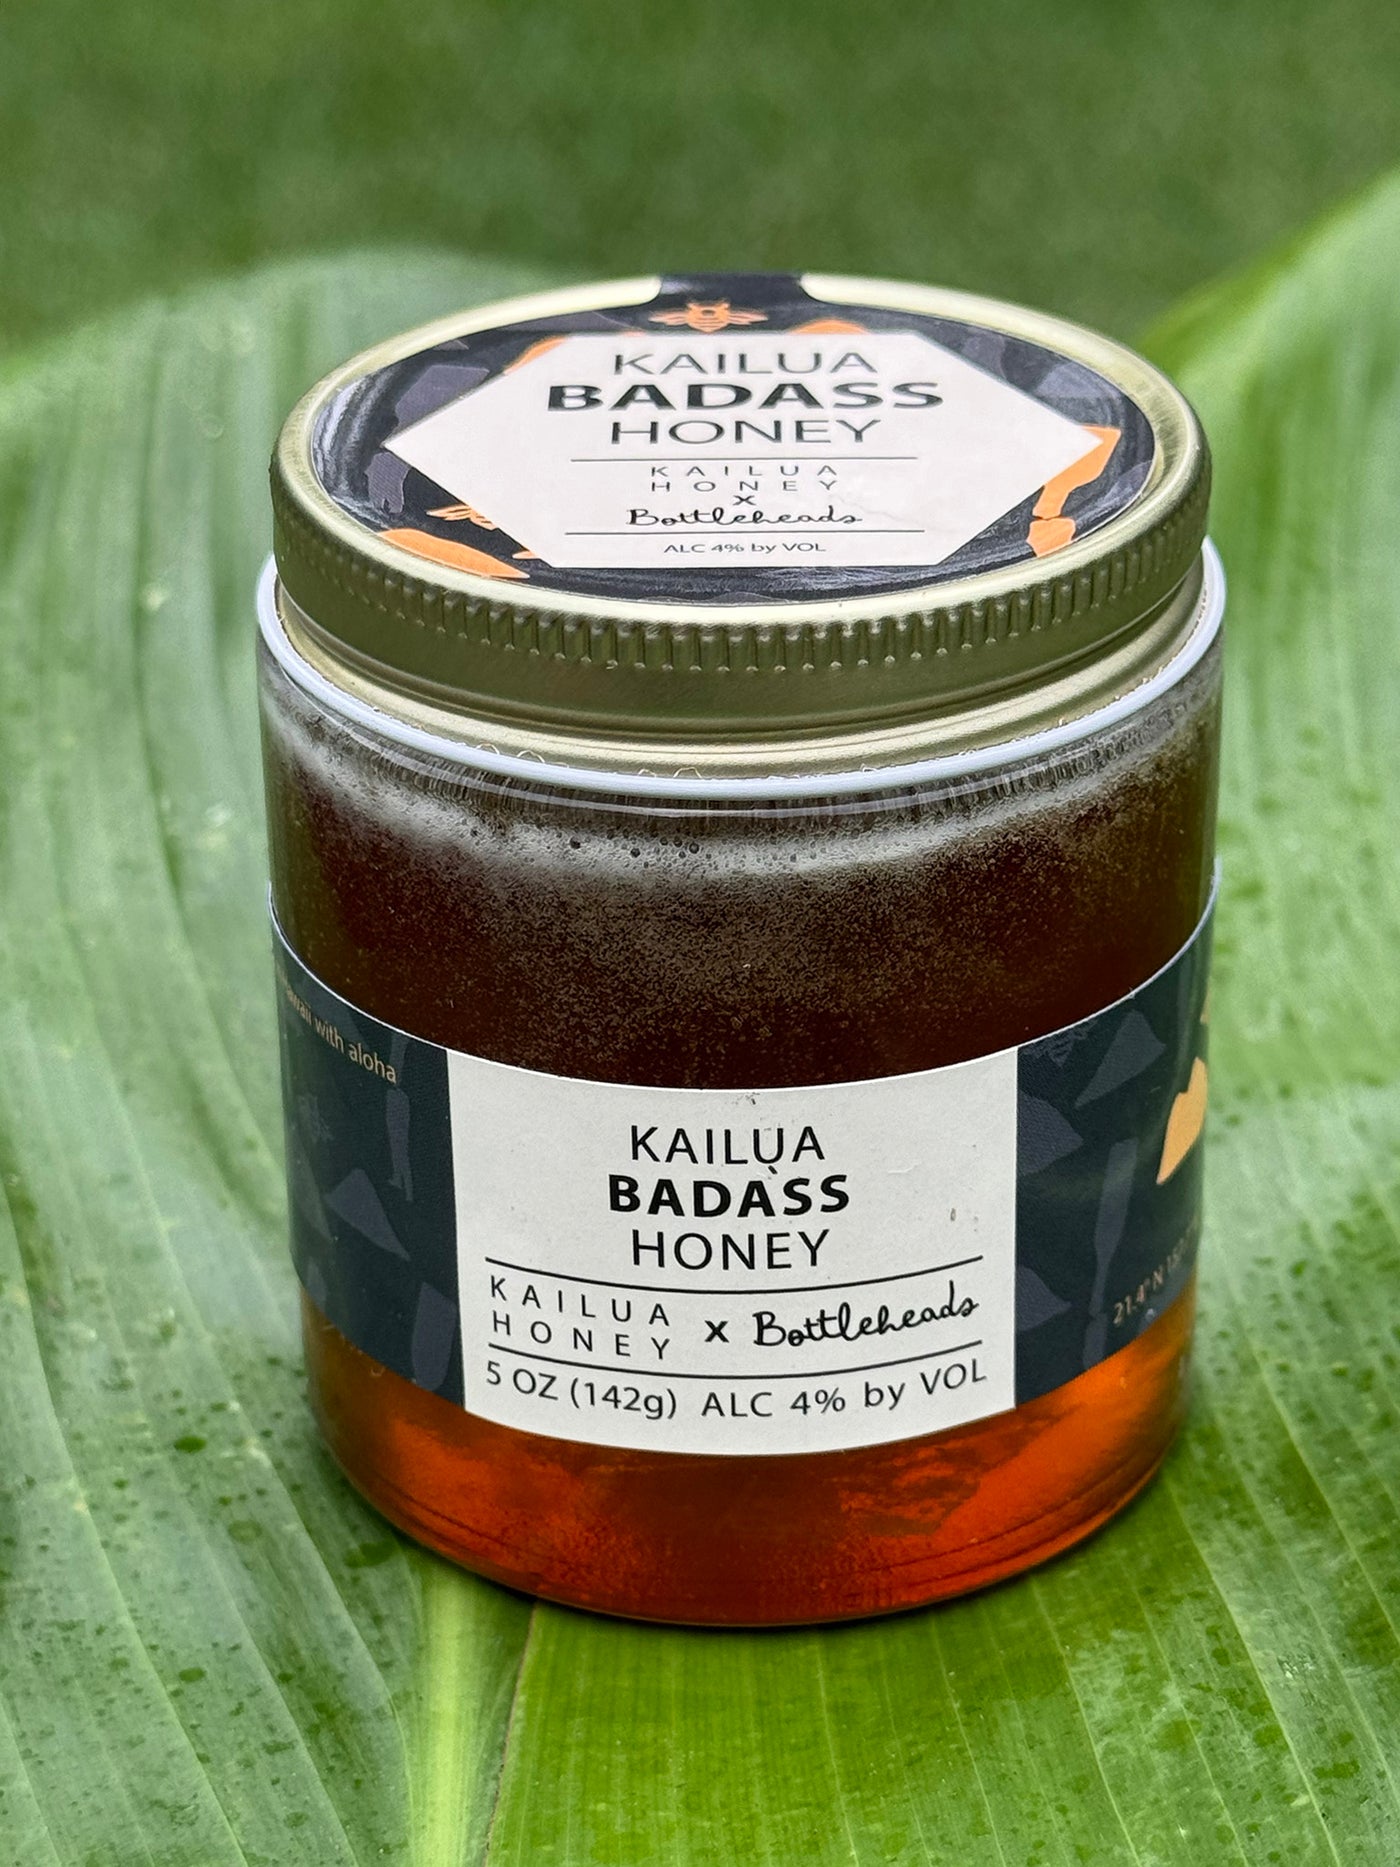 Kailua Badass Honey